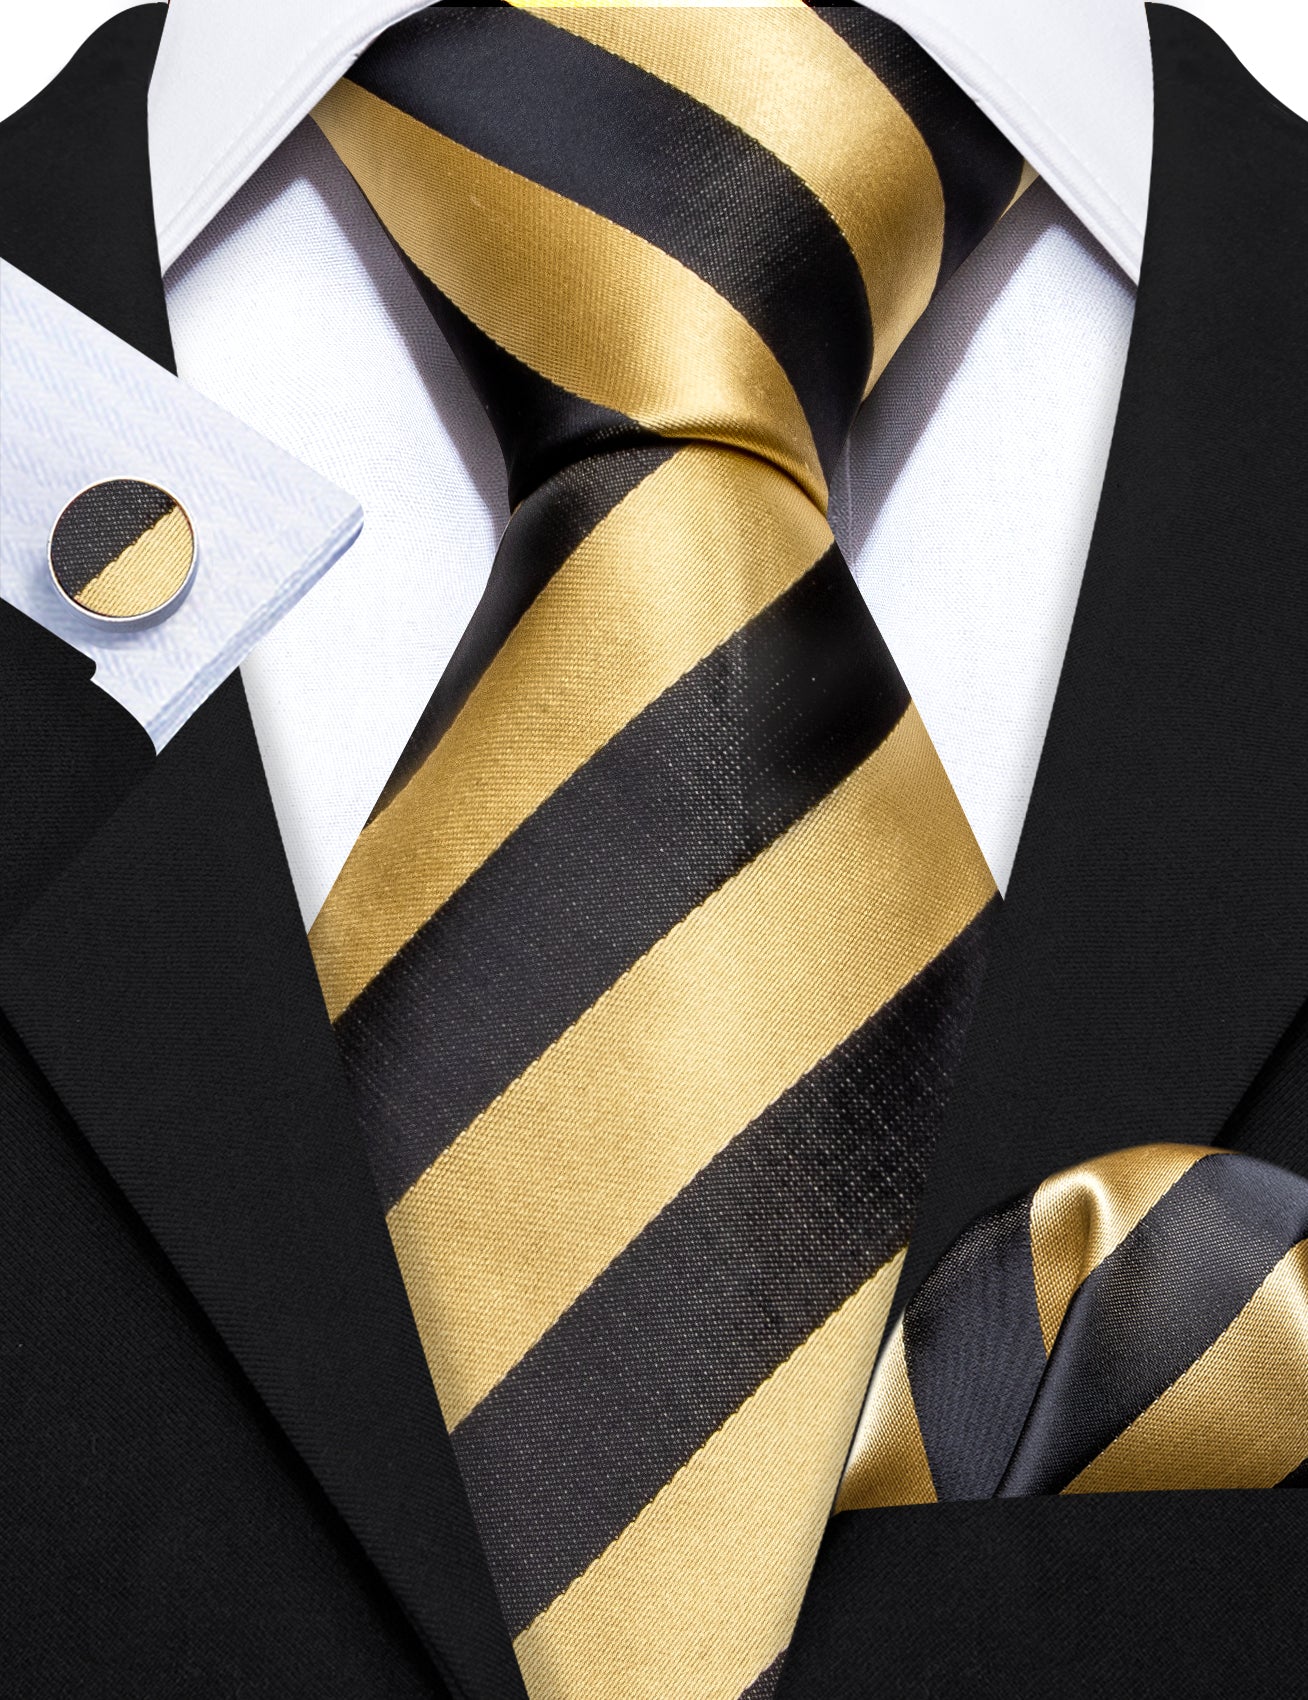 Barry.wang Black Tie Yellow Striped Silk Men's Tie Hanky Cufflinks Set